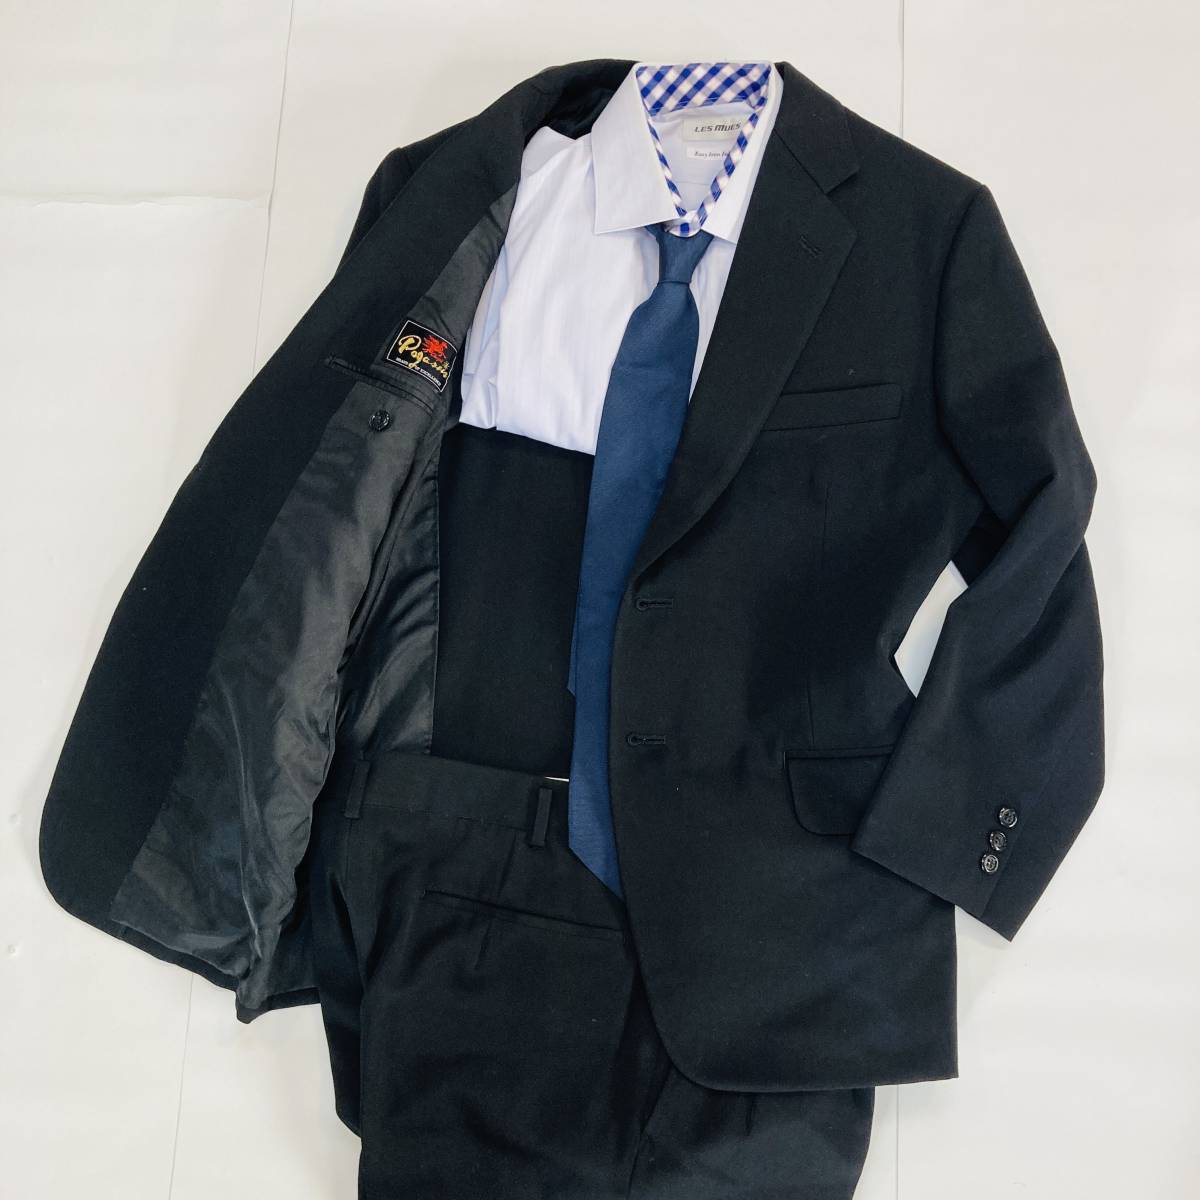 a01551 美品 PEGASUS ペガサス スーツセットアップ ブラックフォーマル シングル 黒 礼服 万能 シンプル オフィススタイリッシュルックの画像5